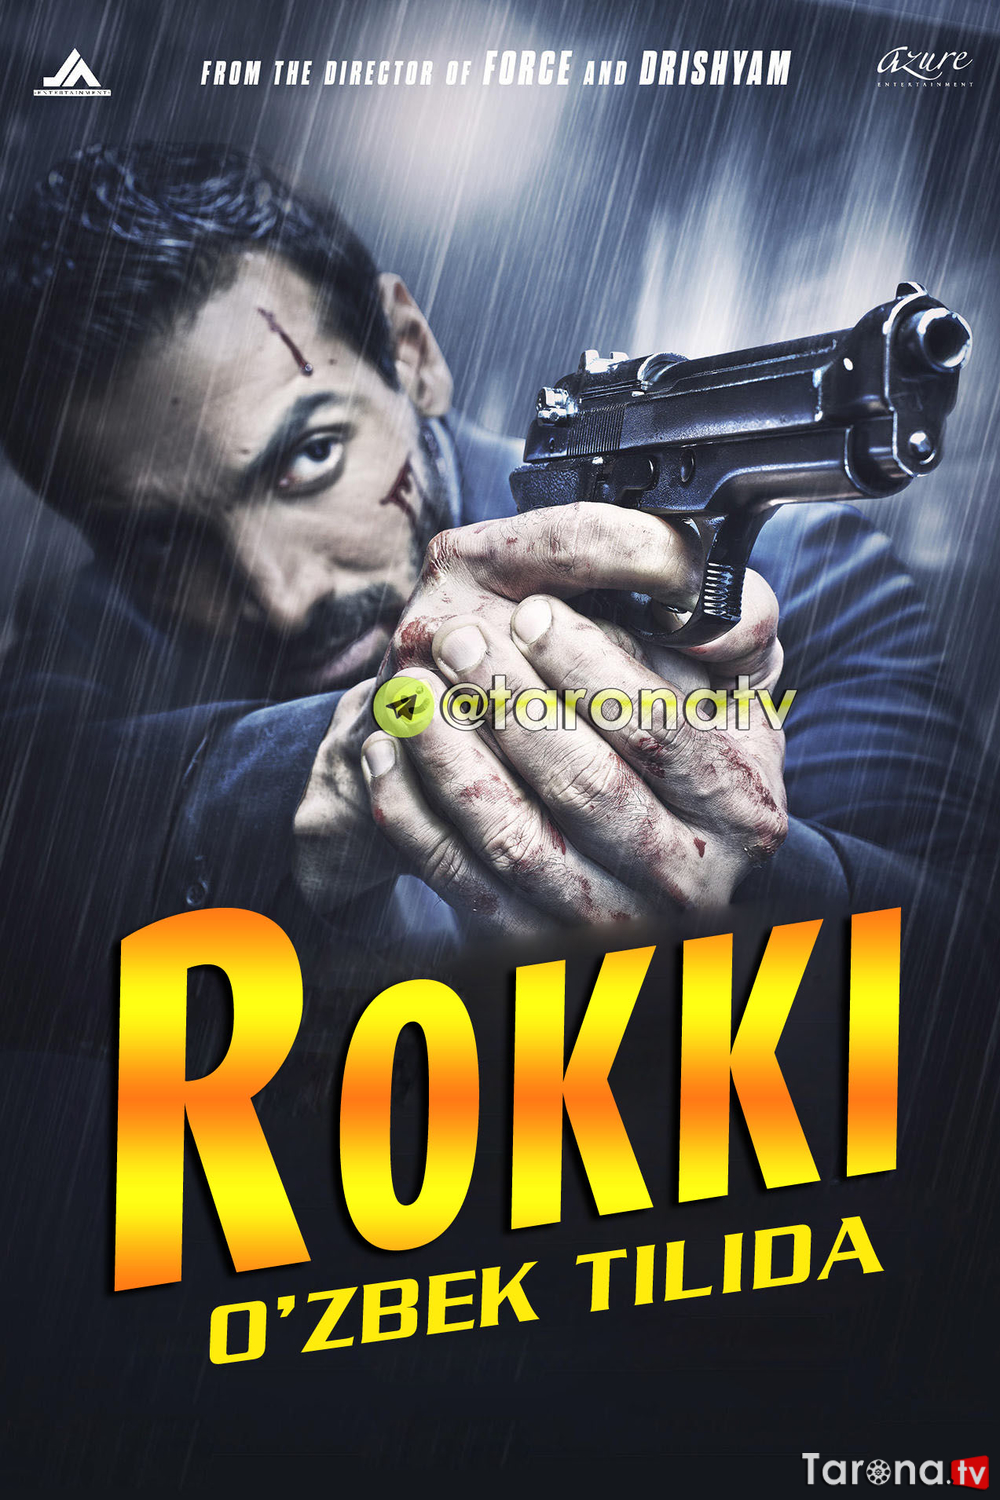 Rokki (Hind detektiv filmi, o'zbek tilida) 2016